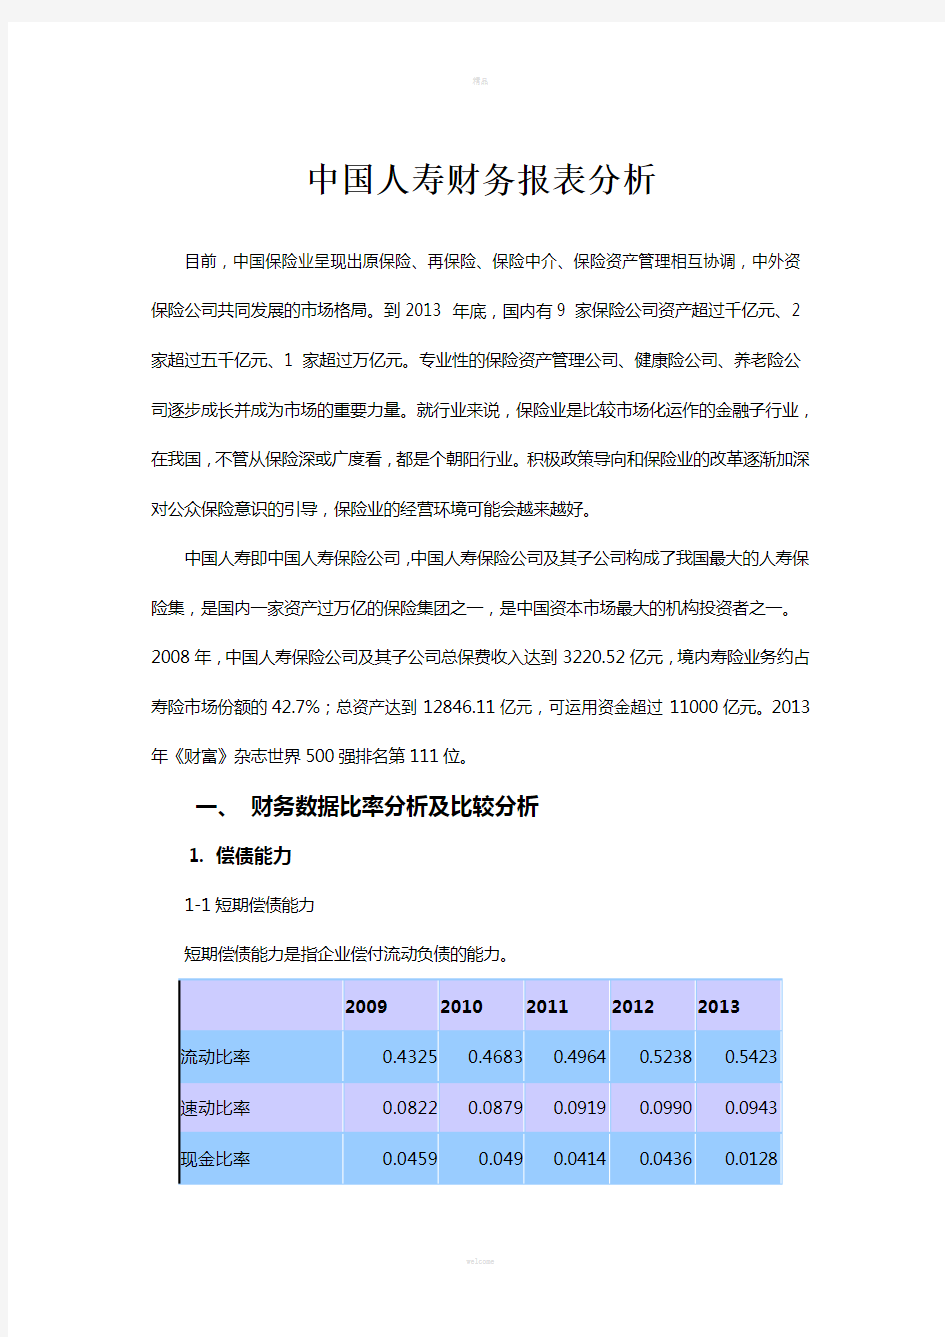 中国人寿-财务报表分析(09-13年)